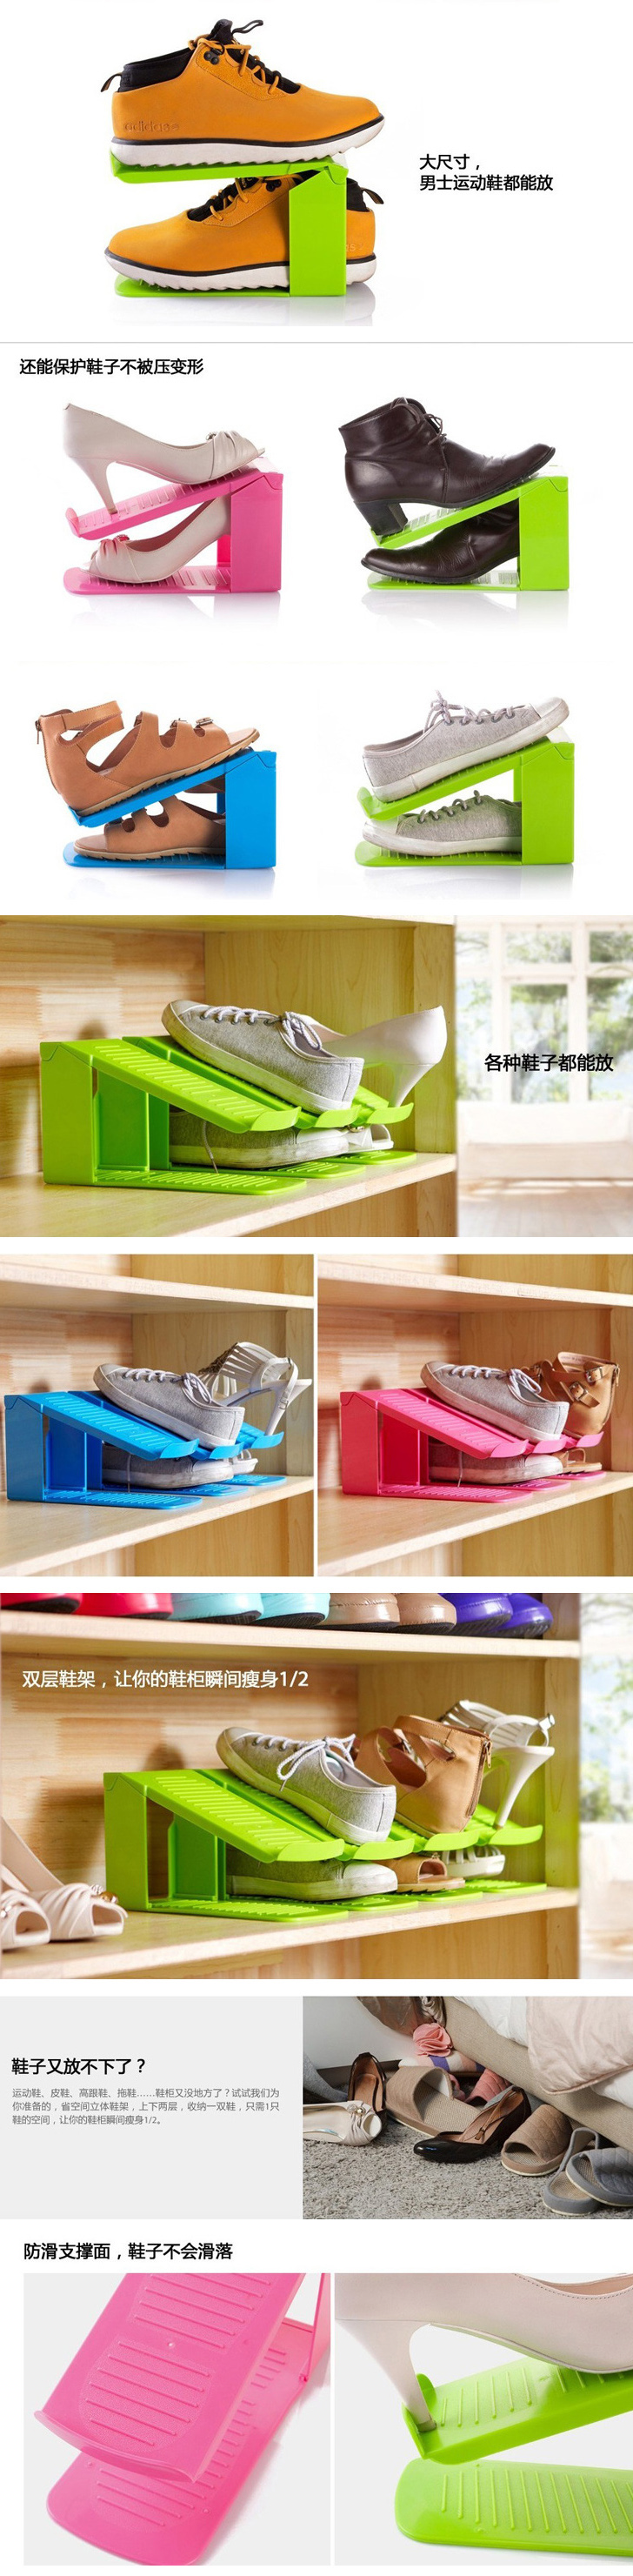 加厚一体式鞋架收纳鞋架简易塑料鞋架双层鞋架 3个装 颜色随机